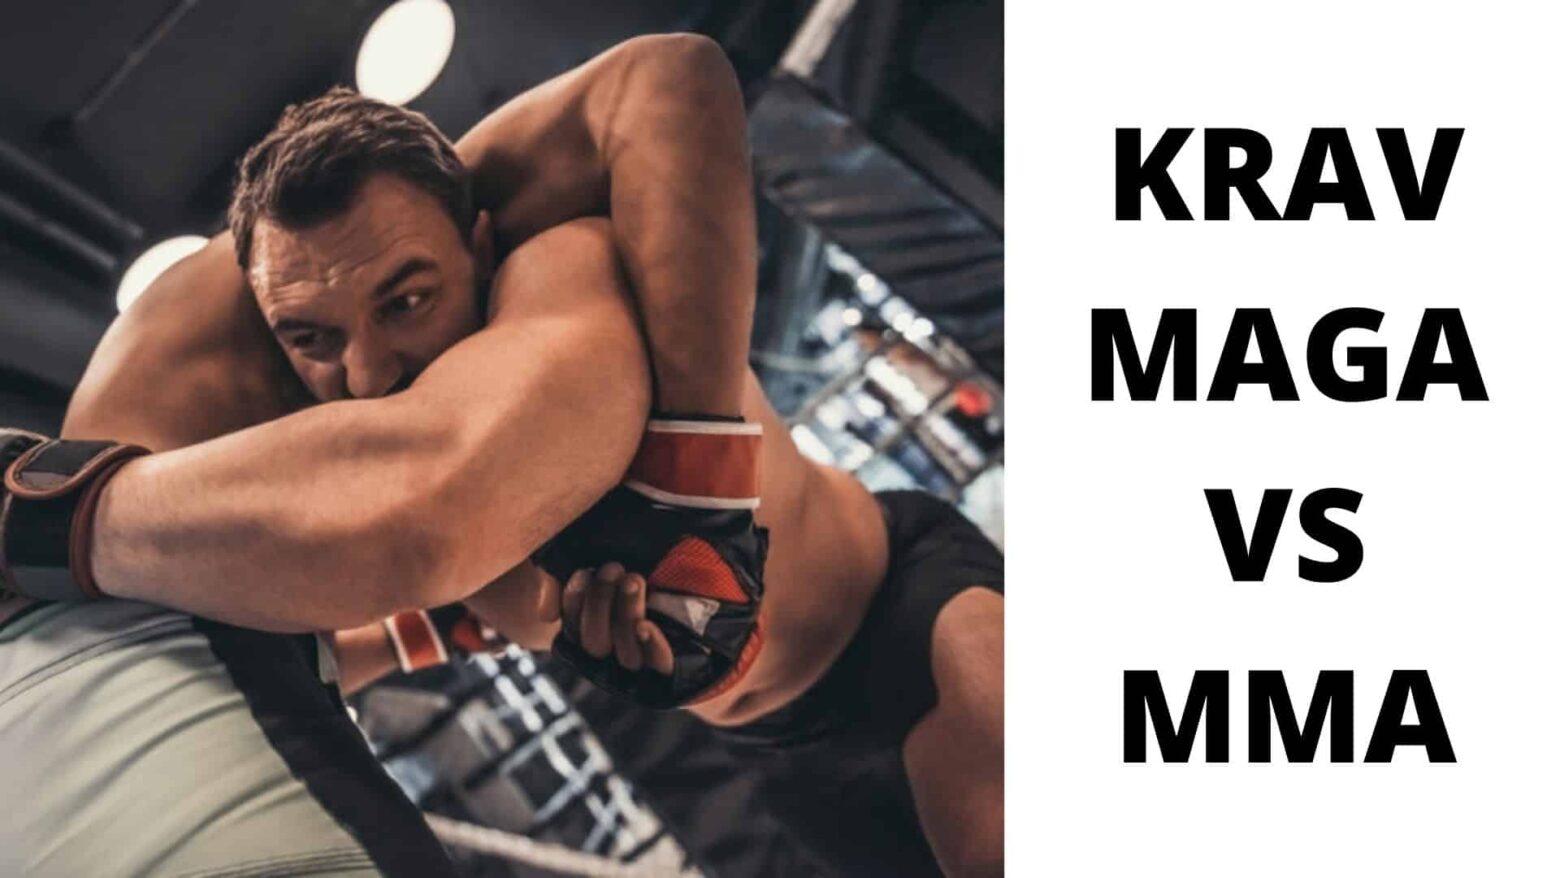 Krav Maga vs MMA: Which is Better for Me?